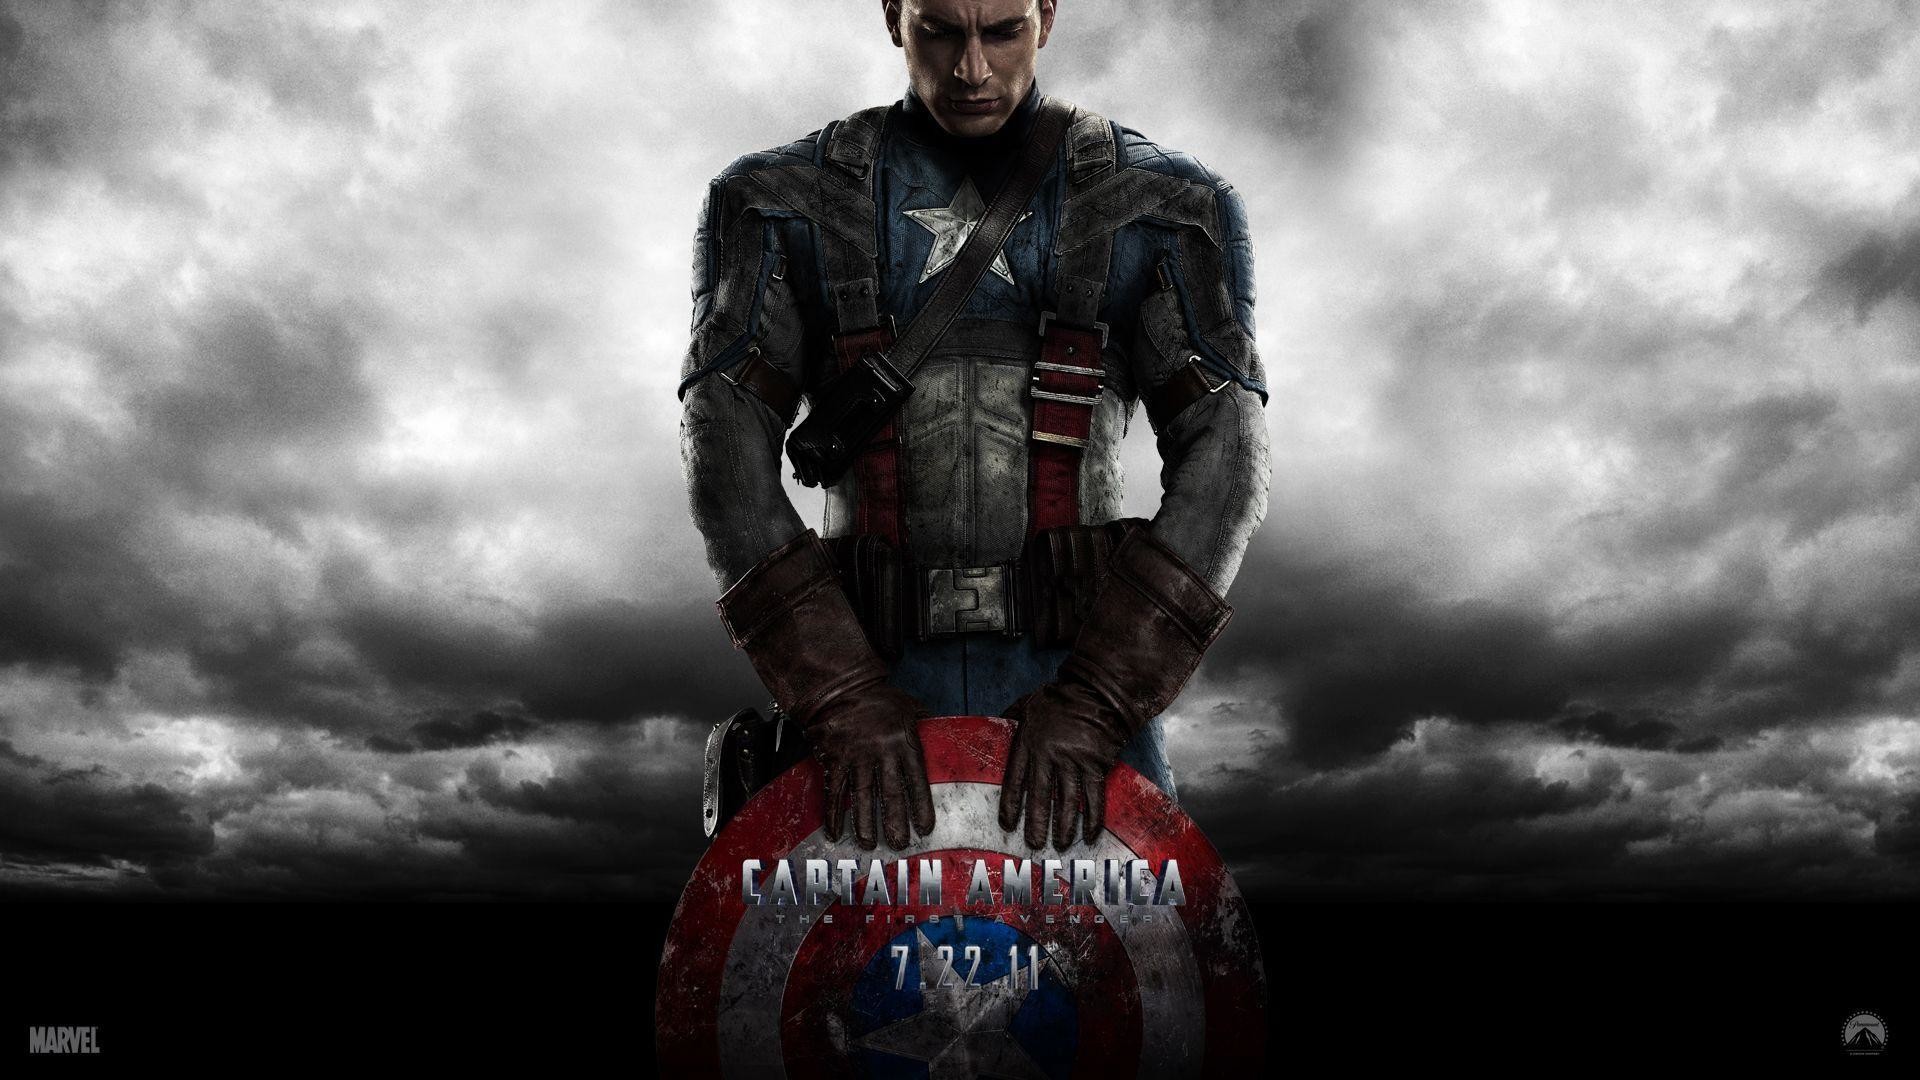 1920x1080 Captain America HD Wallpapers 1080p - WallpaperSafari